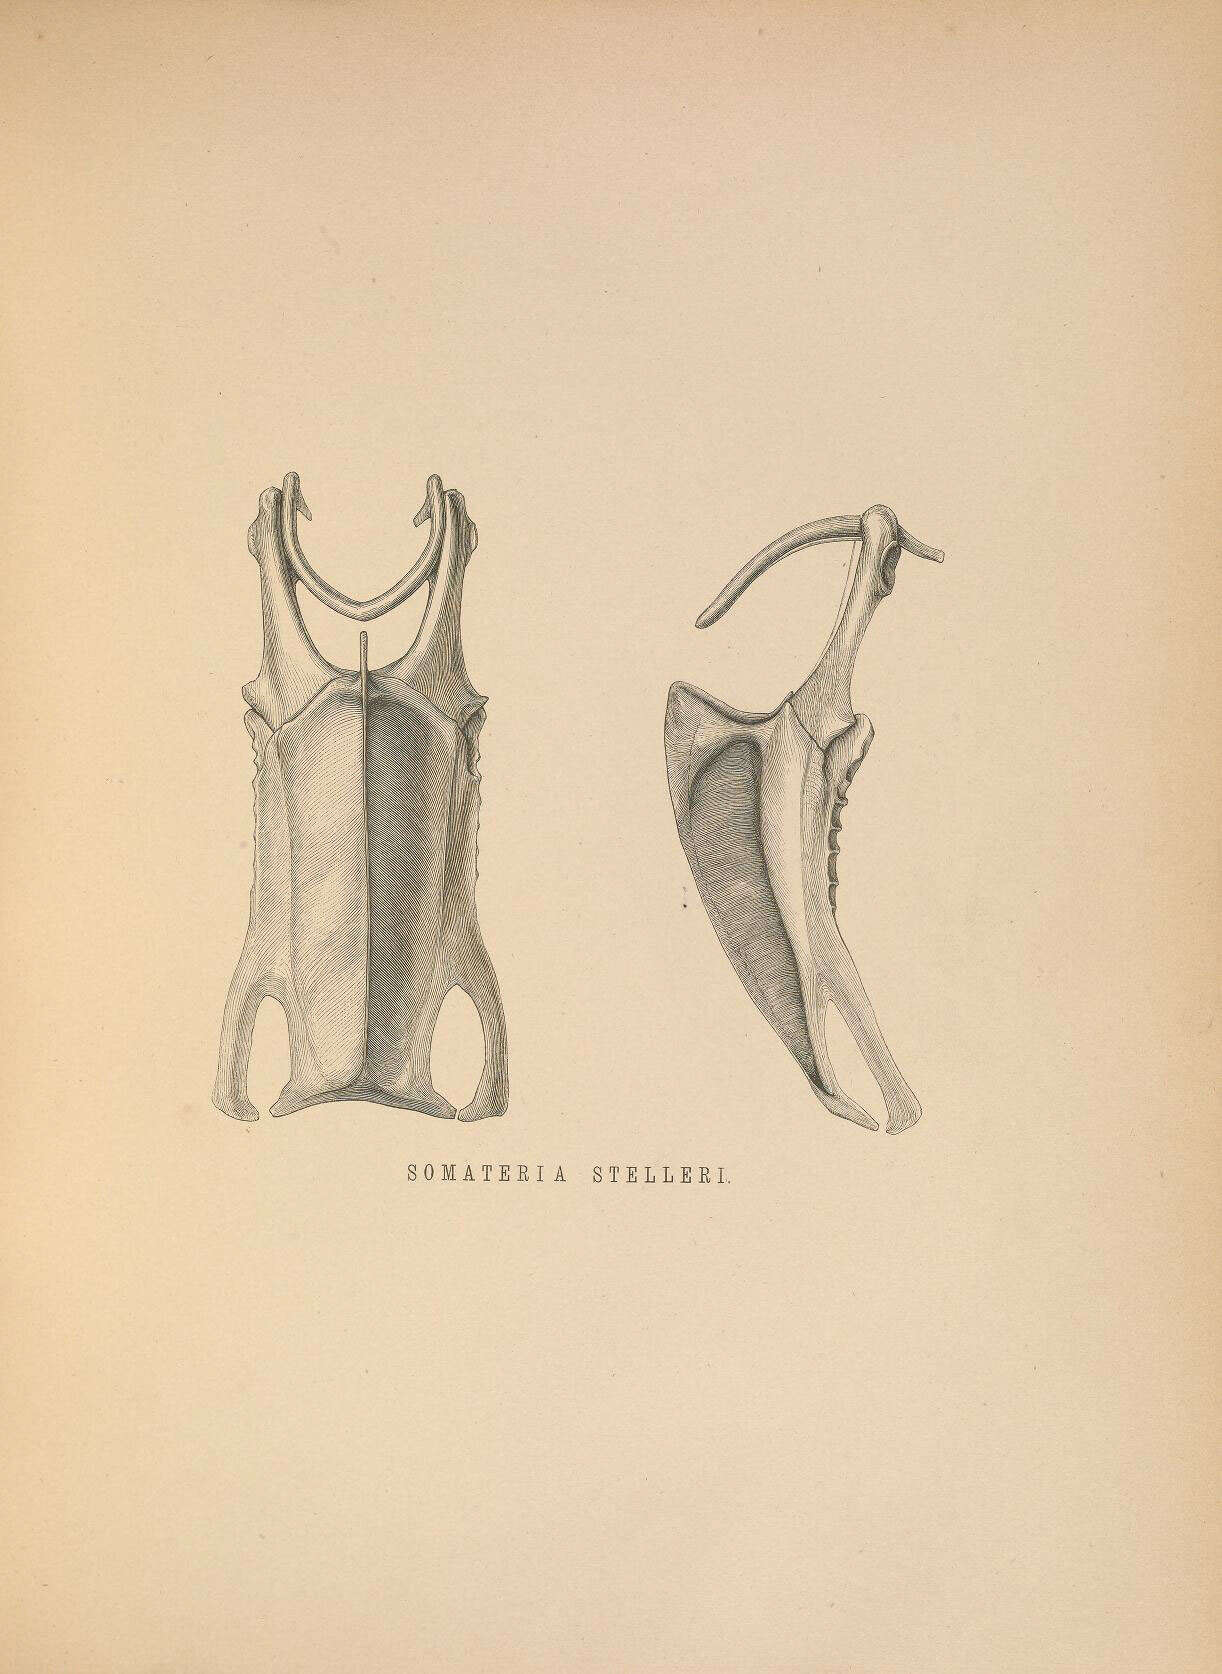 Sivun Polysticta Eyton 1836 kuva